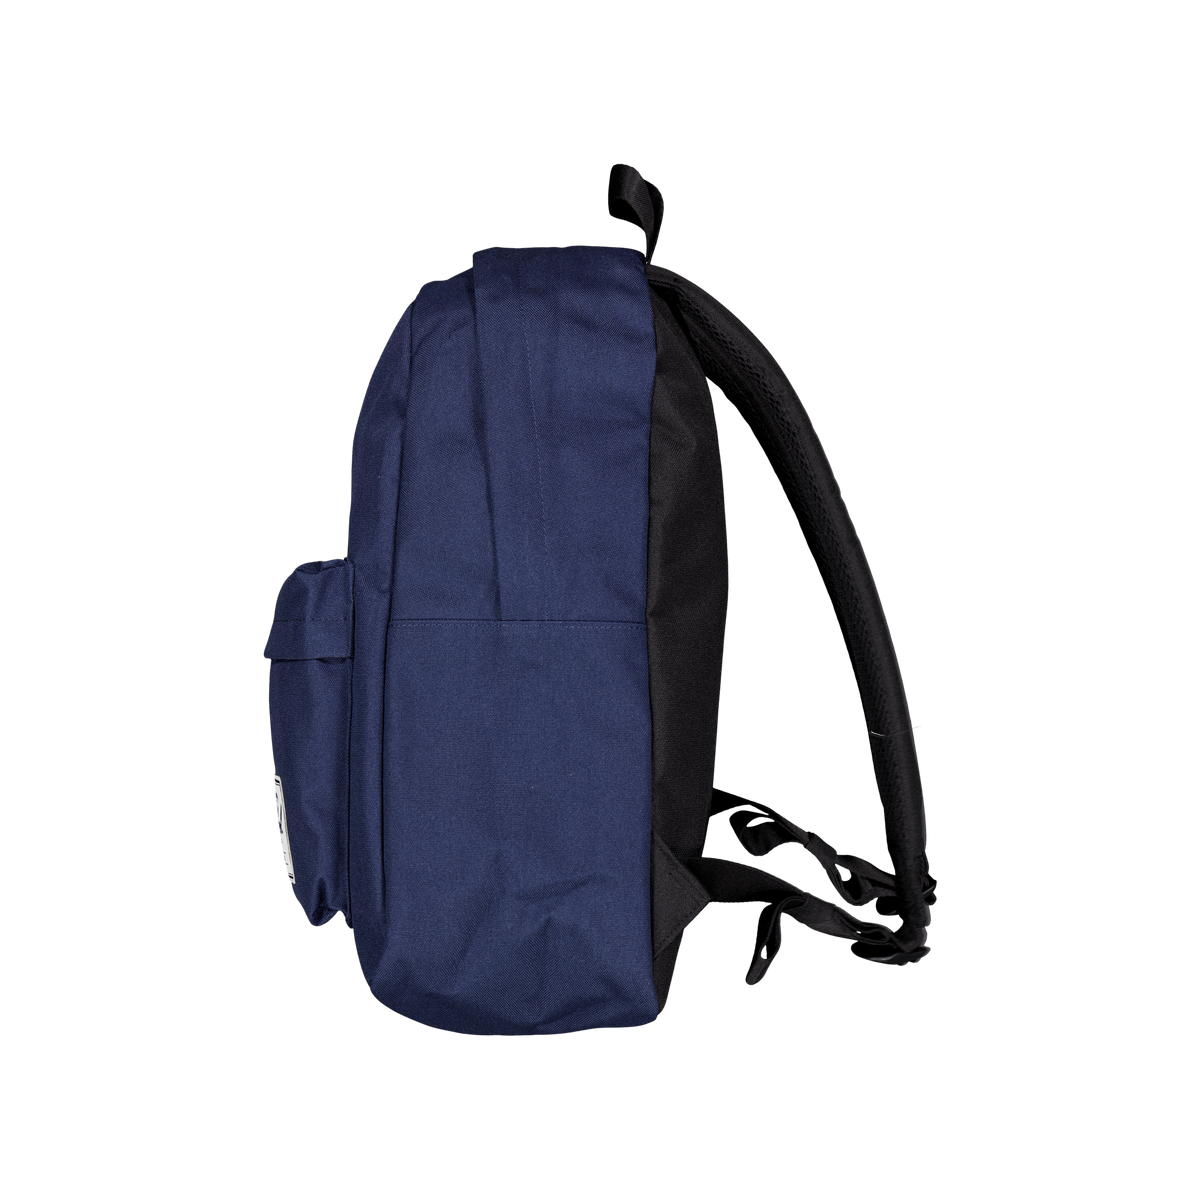 Herschel Classic Backpack Navy